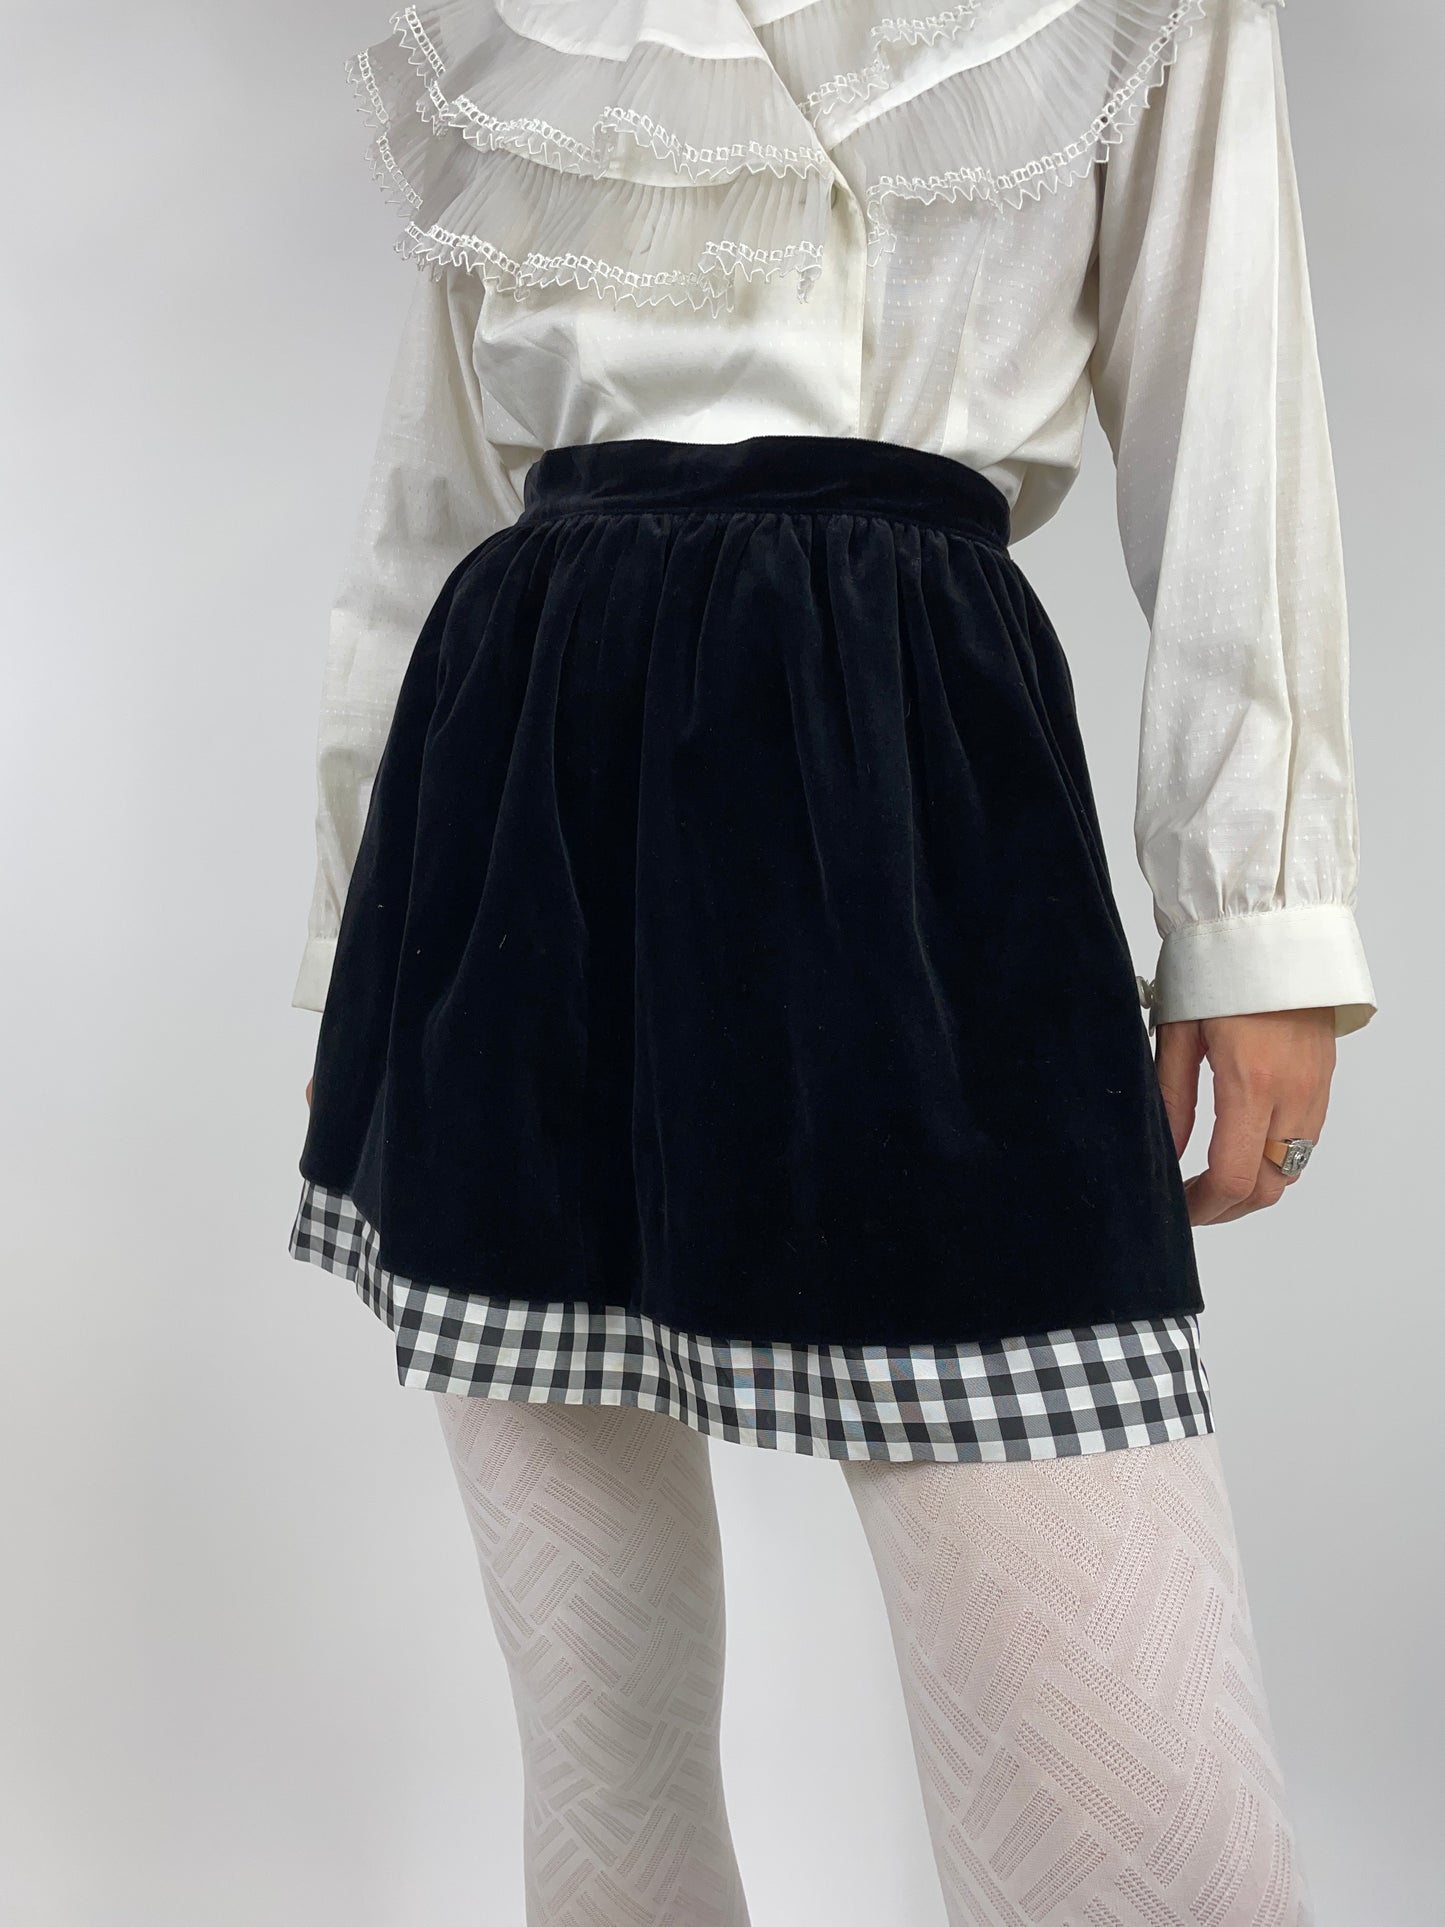 Smooth velvet miniskirt